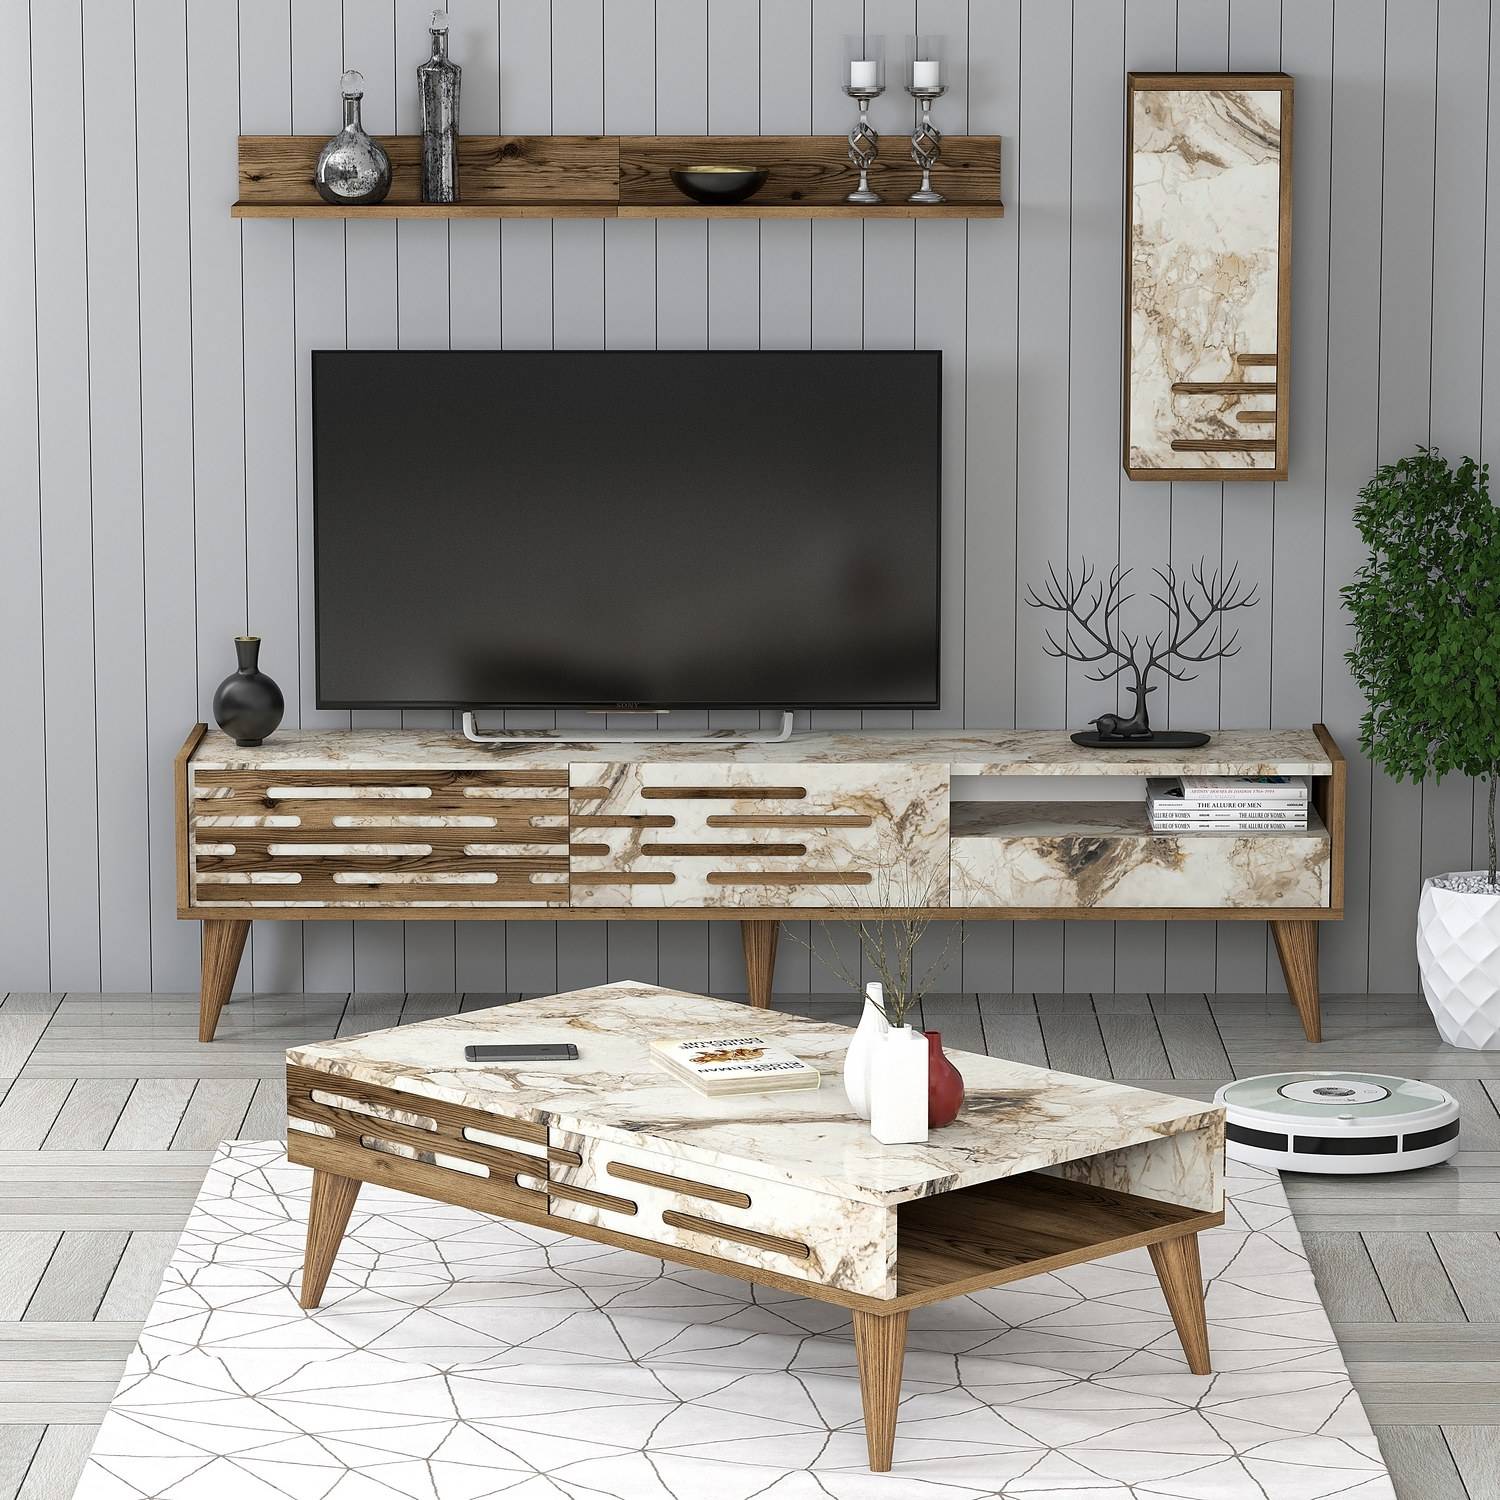 Oviva Wohnzimmermöbel-Set Dunkles Holz und Marmoreffekt Weiß